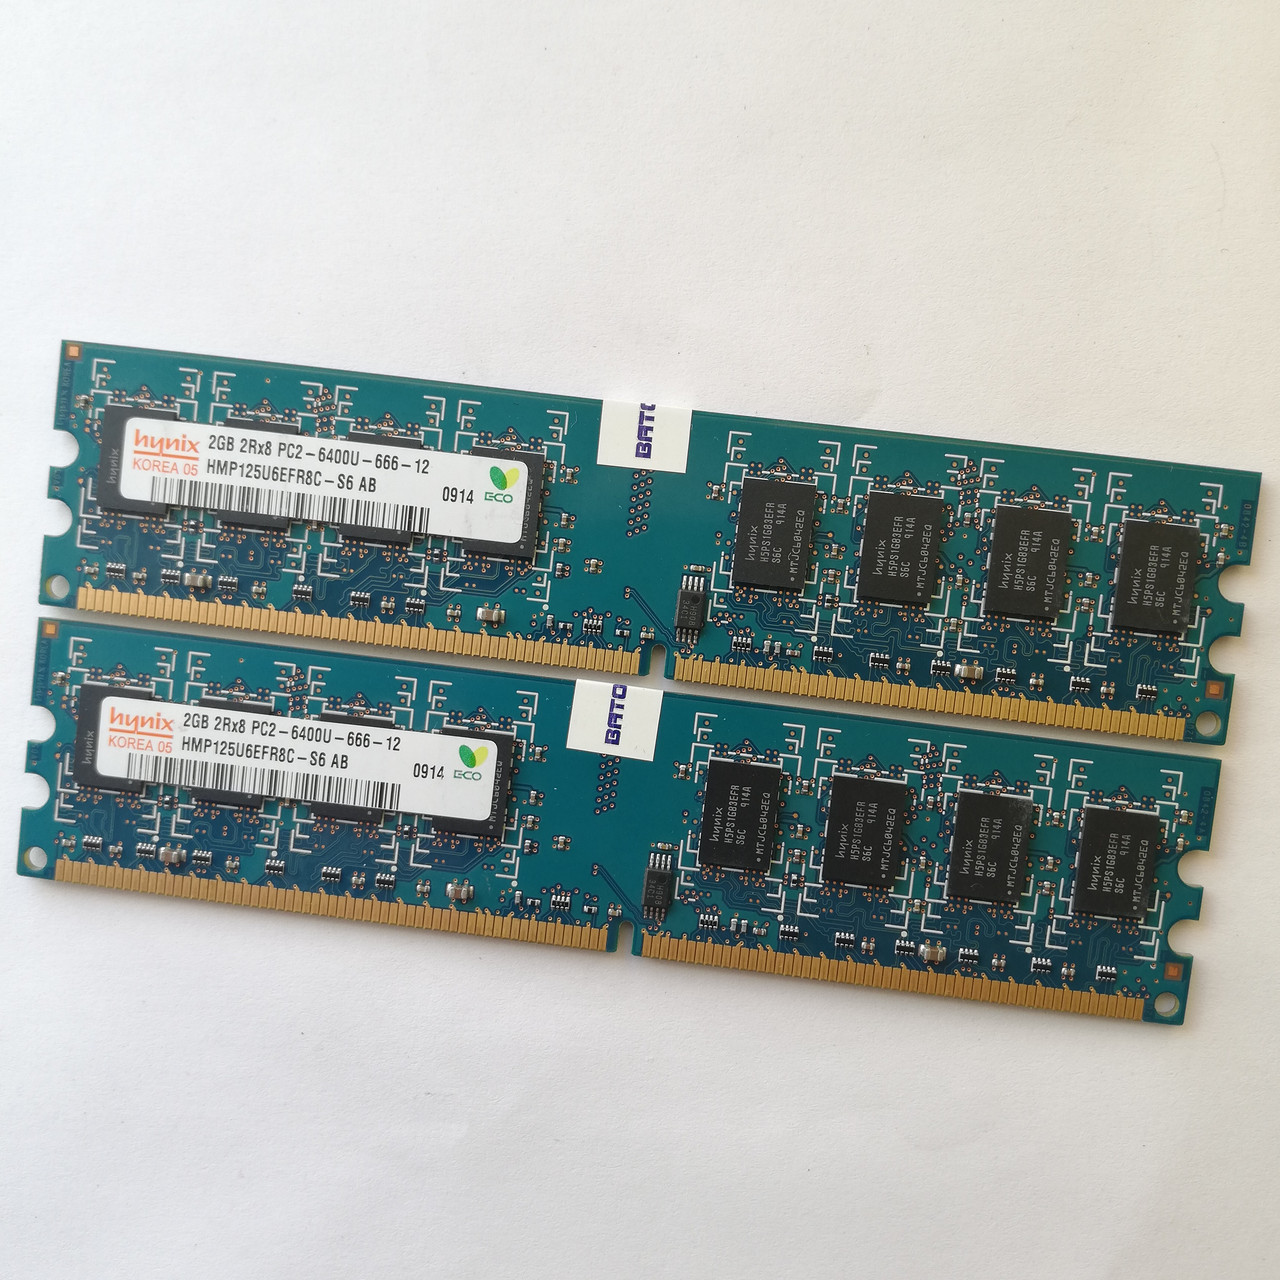 Пара оперативної пам'яті Hynix DDR2 4Gb (2Gb+2Gb) 800MHz PC2 6400U CL6 (HMP125U6EFR8C-S6 AB) Б/В, фото 1